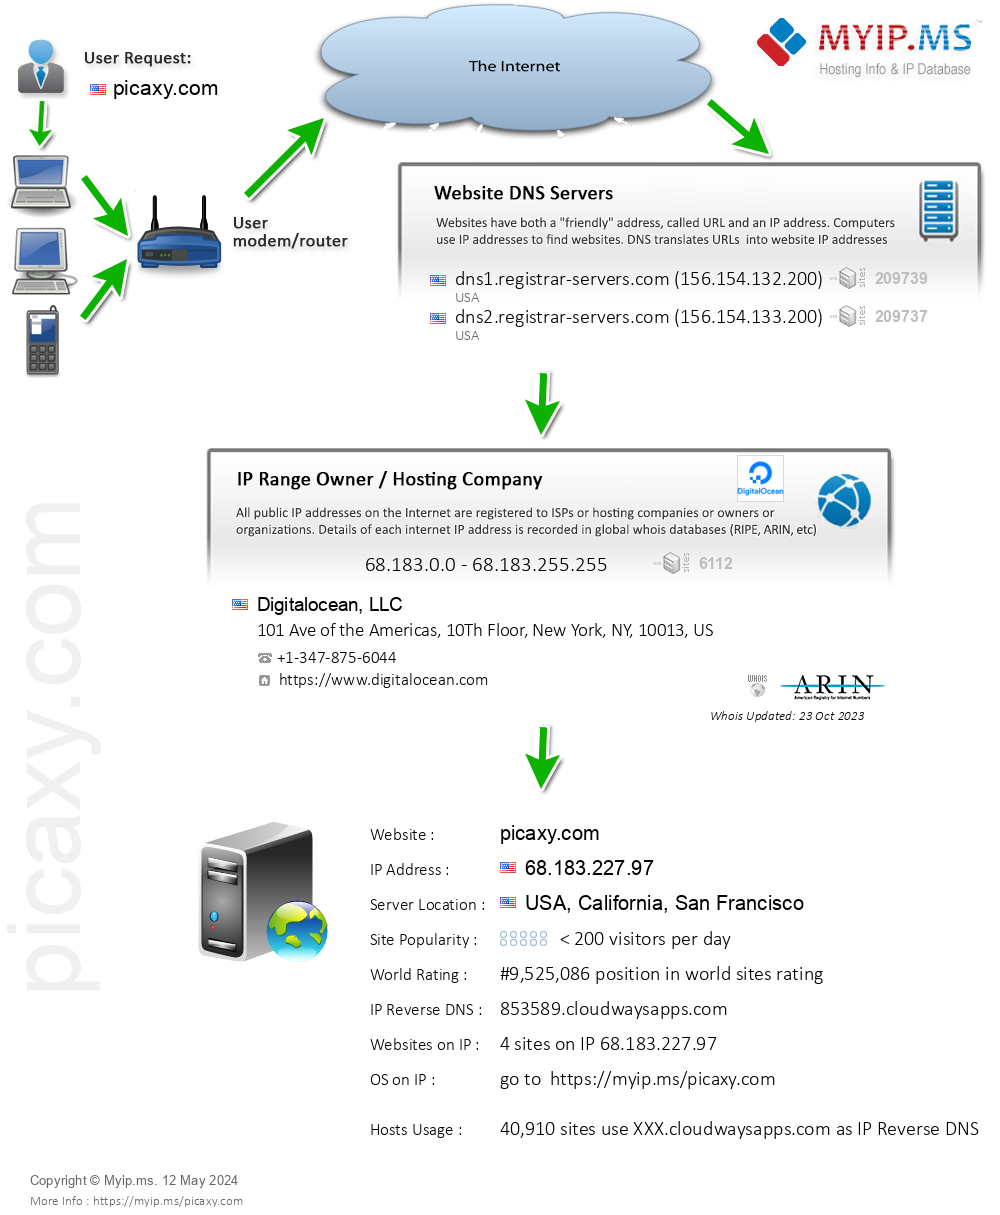 Picaxy.com - Website Hosting Visual IP Diagram